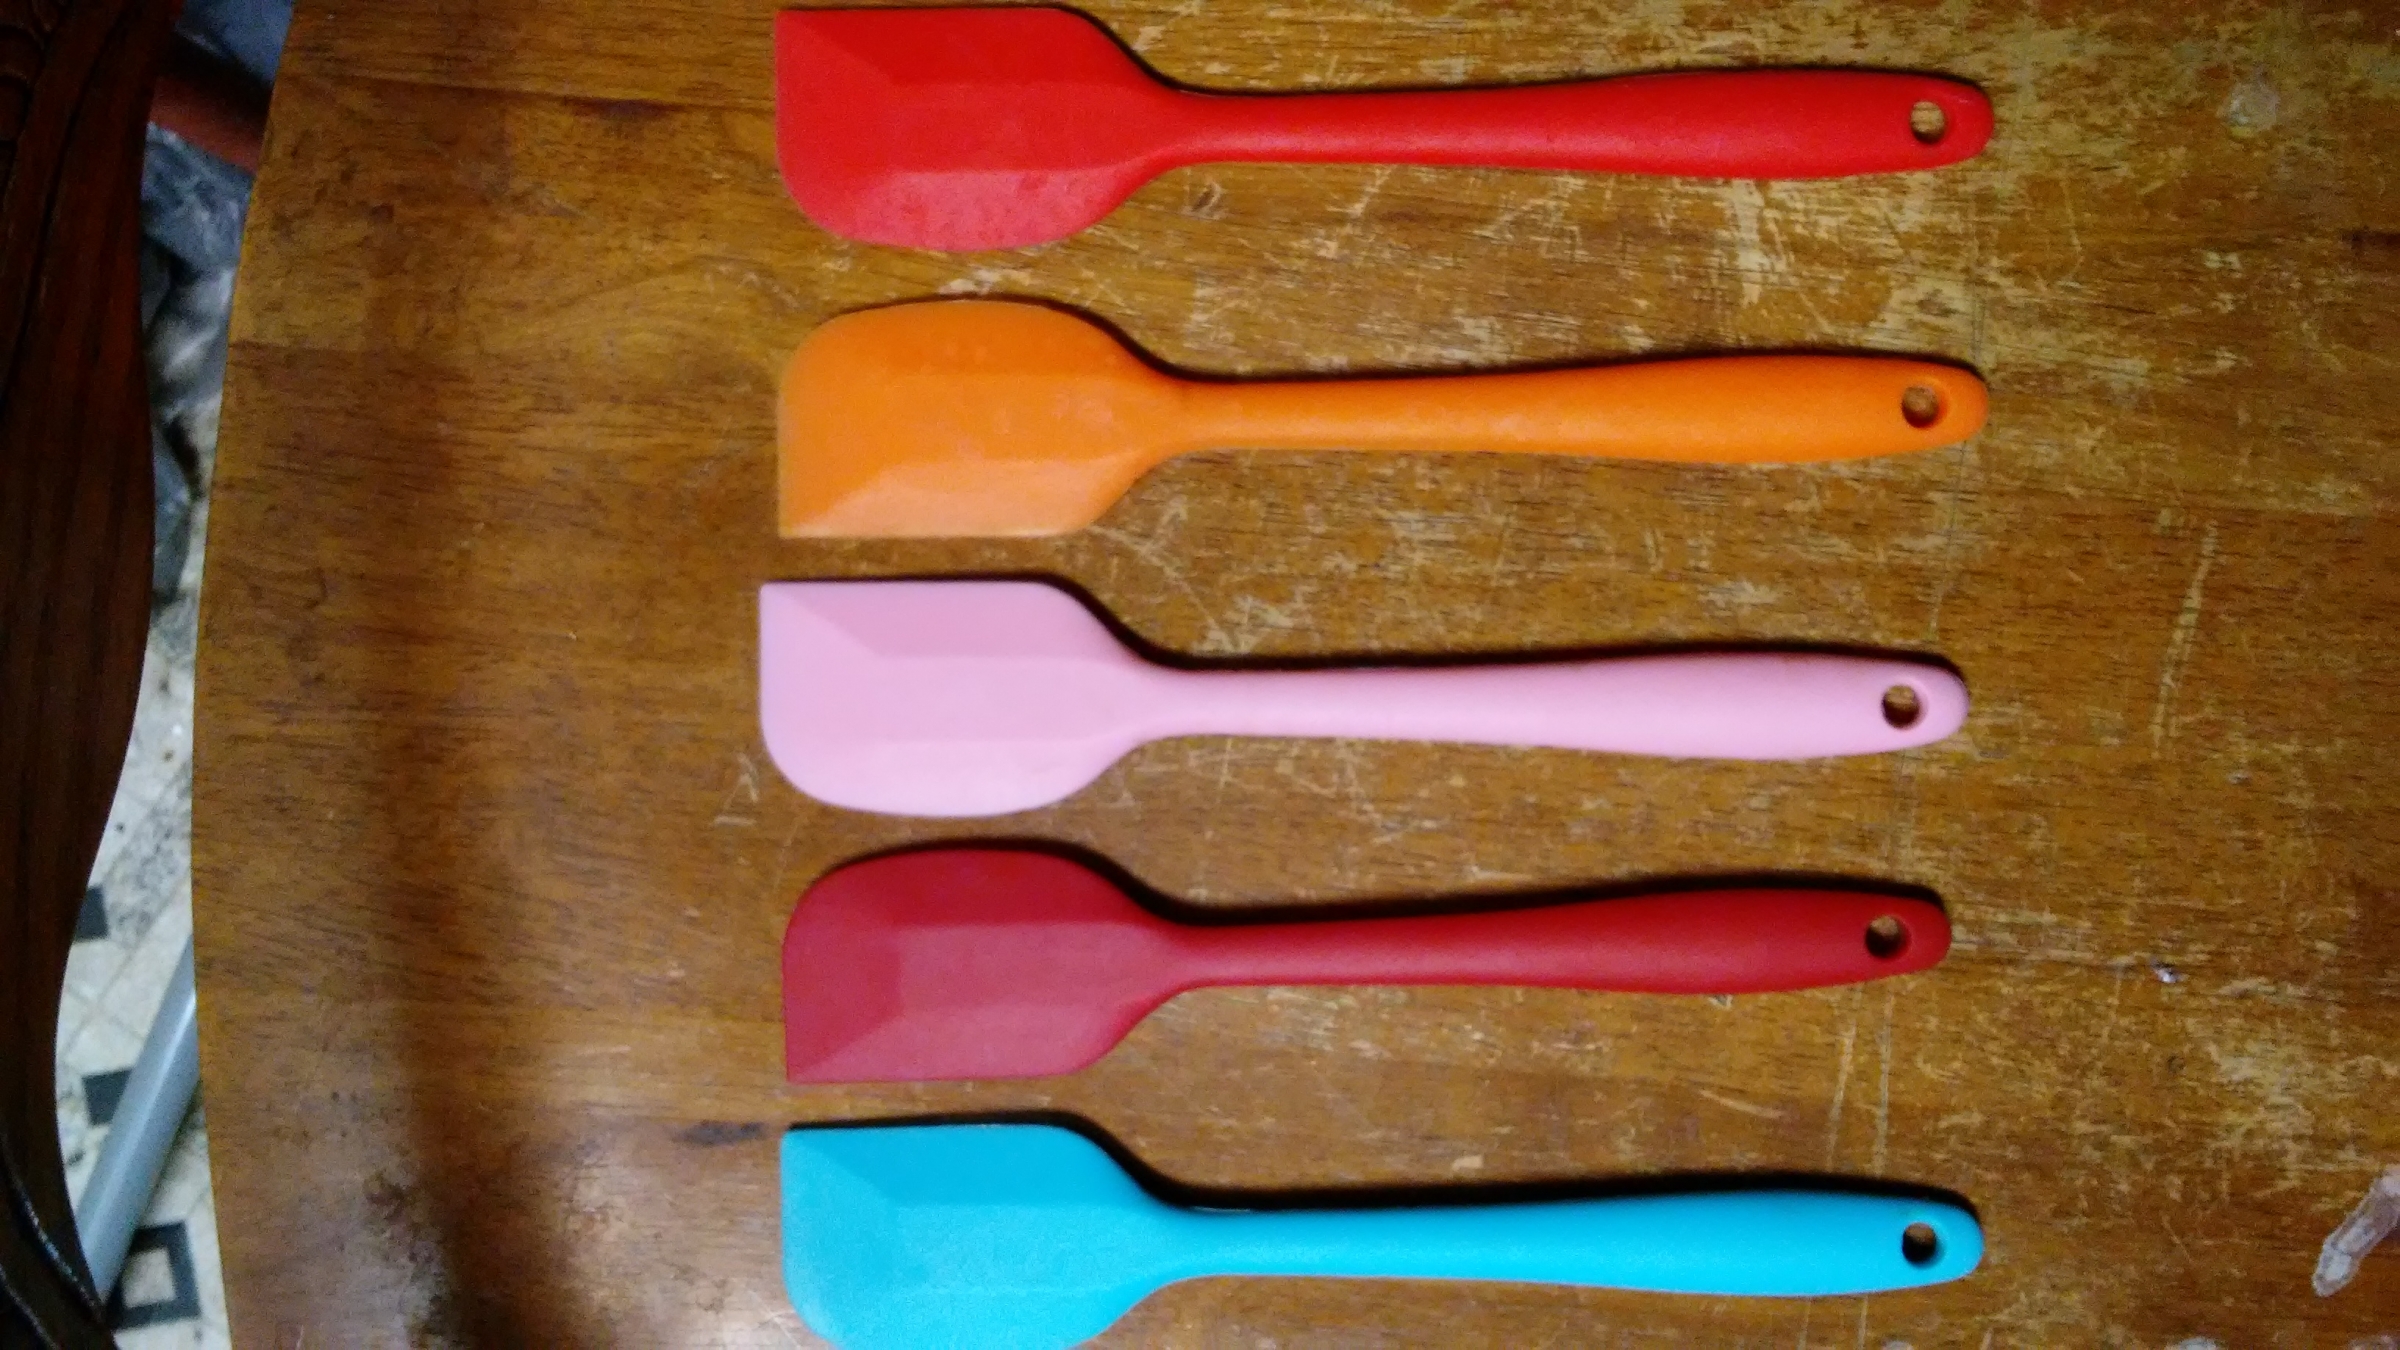 Very durable spatulas